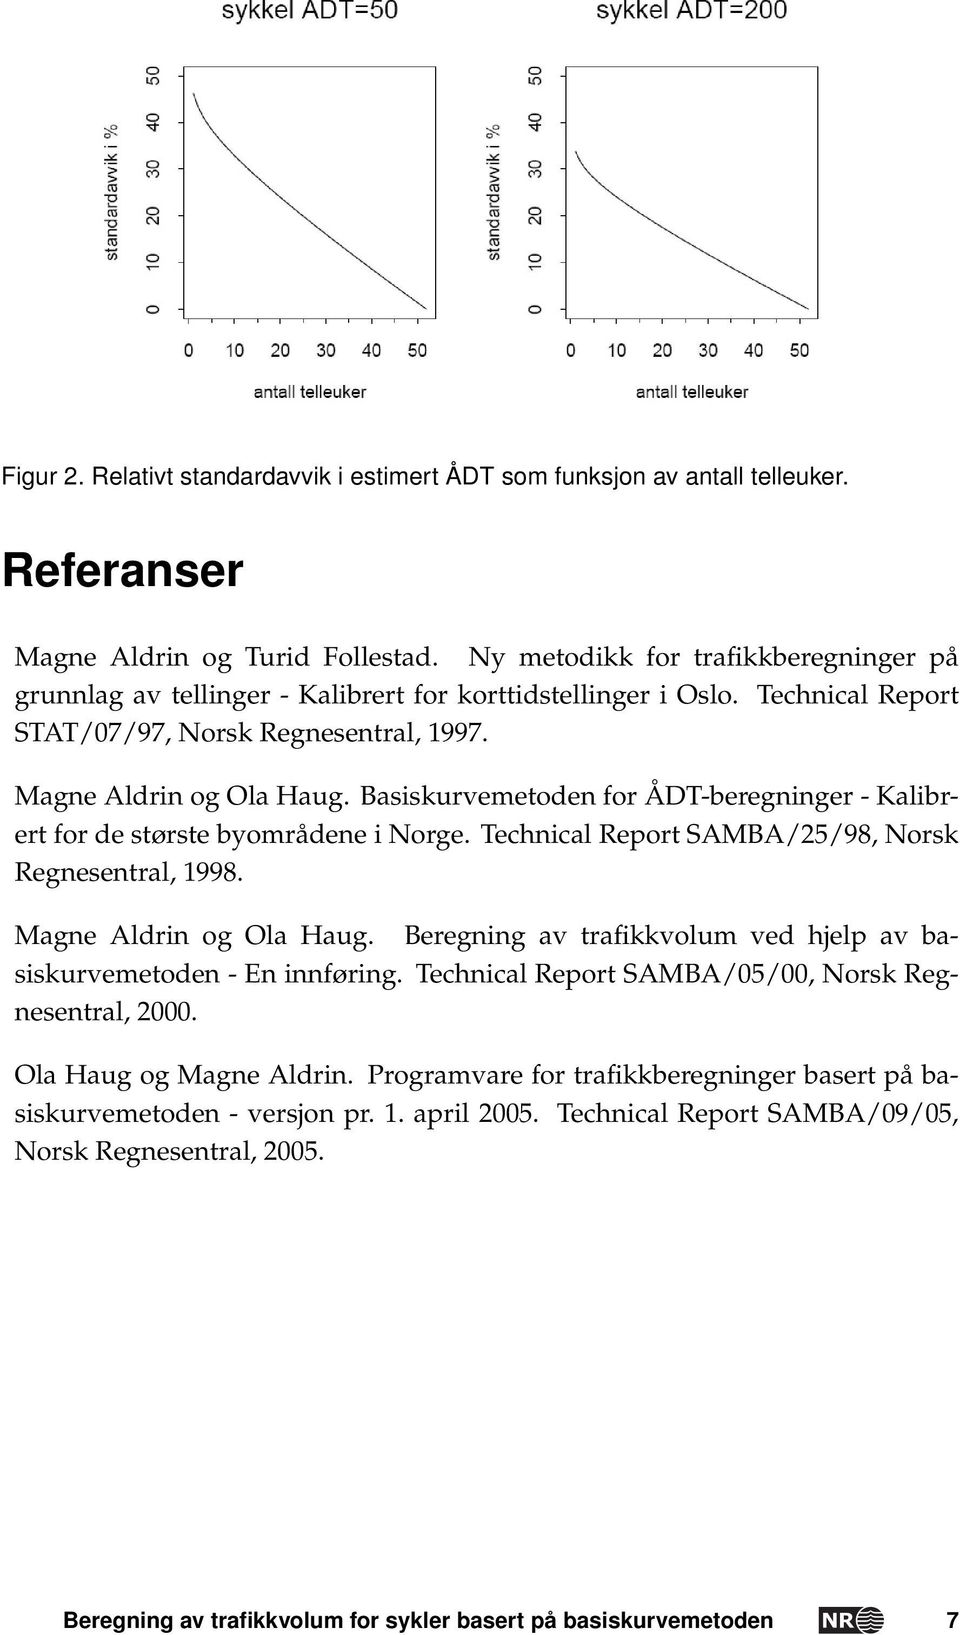 Basiskurvemetoden for ÅDT-beregninger - Kalibrert for de største byområdene i Norge. Technical Report SAMBA/25/98, Norsk Regnesentral, 1998. Magne Aldrin og Ola Haug.